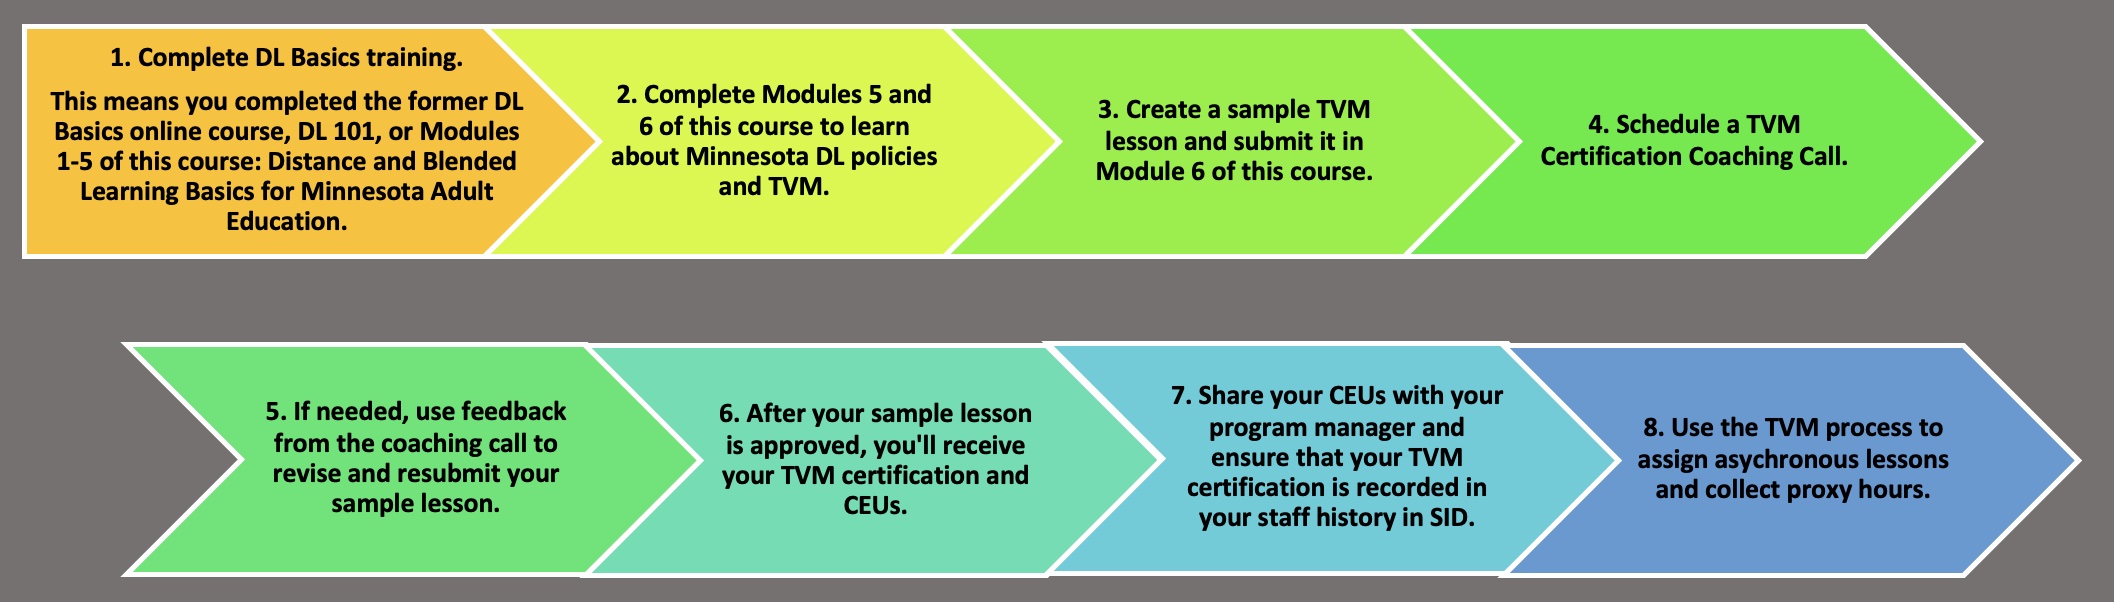 Image showing TVM Certification steps